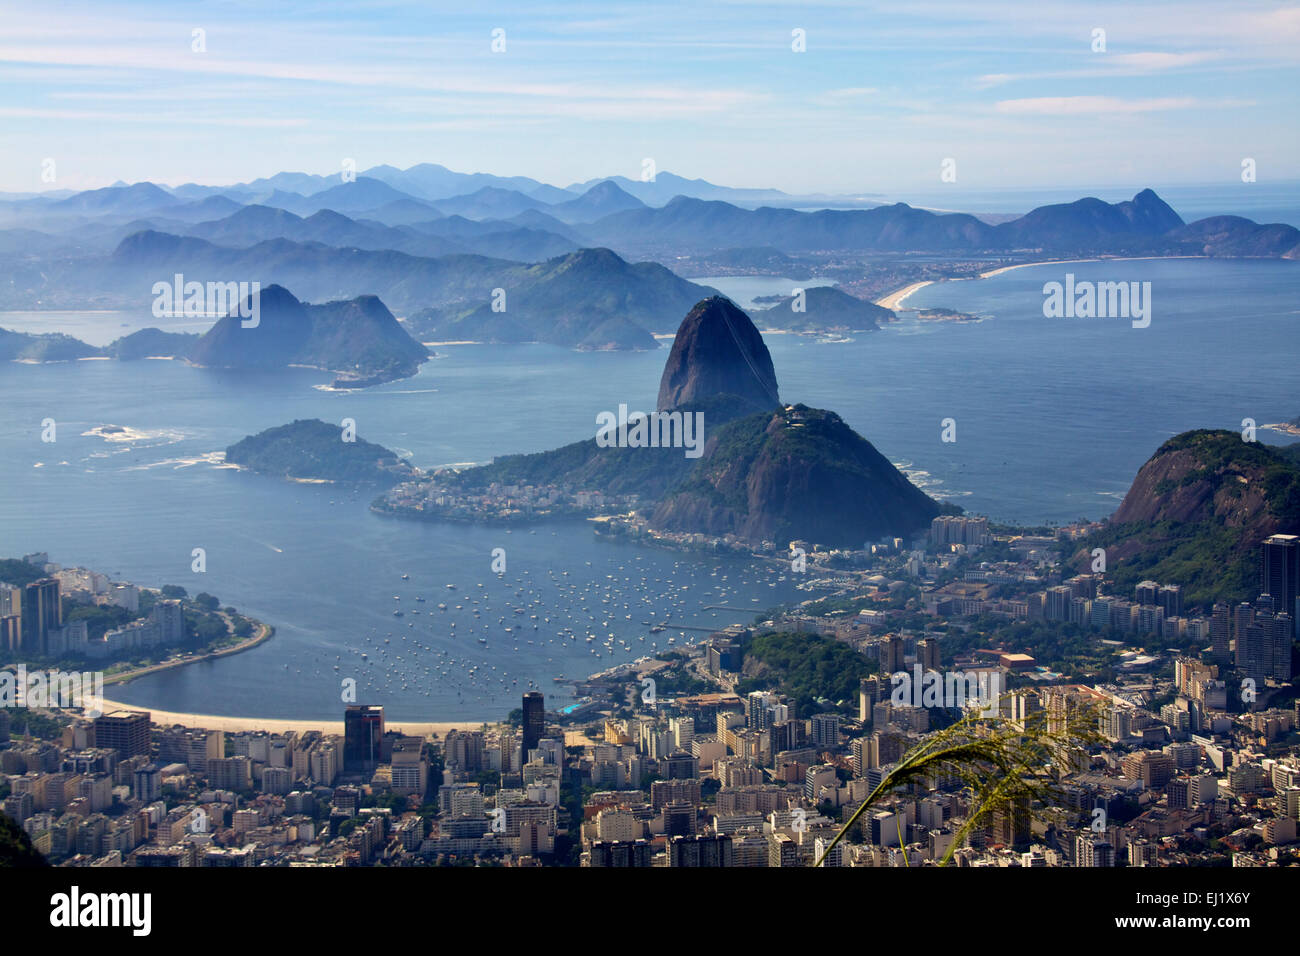 ViewSugar et pain paysage vue sur la ville depuis le mont Corcovado - le Christ rédempteur, Rio de Janeireiro Brésil Amérique du Sud Banque D'Images